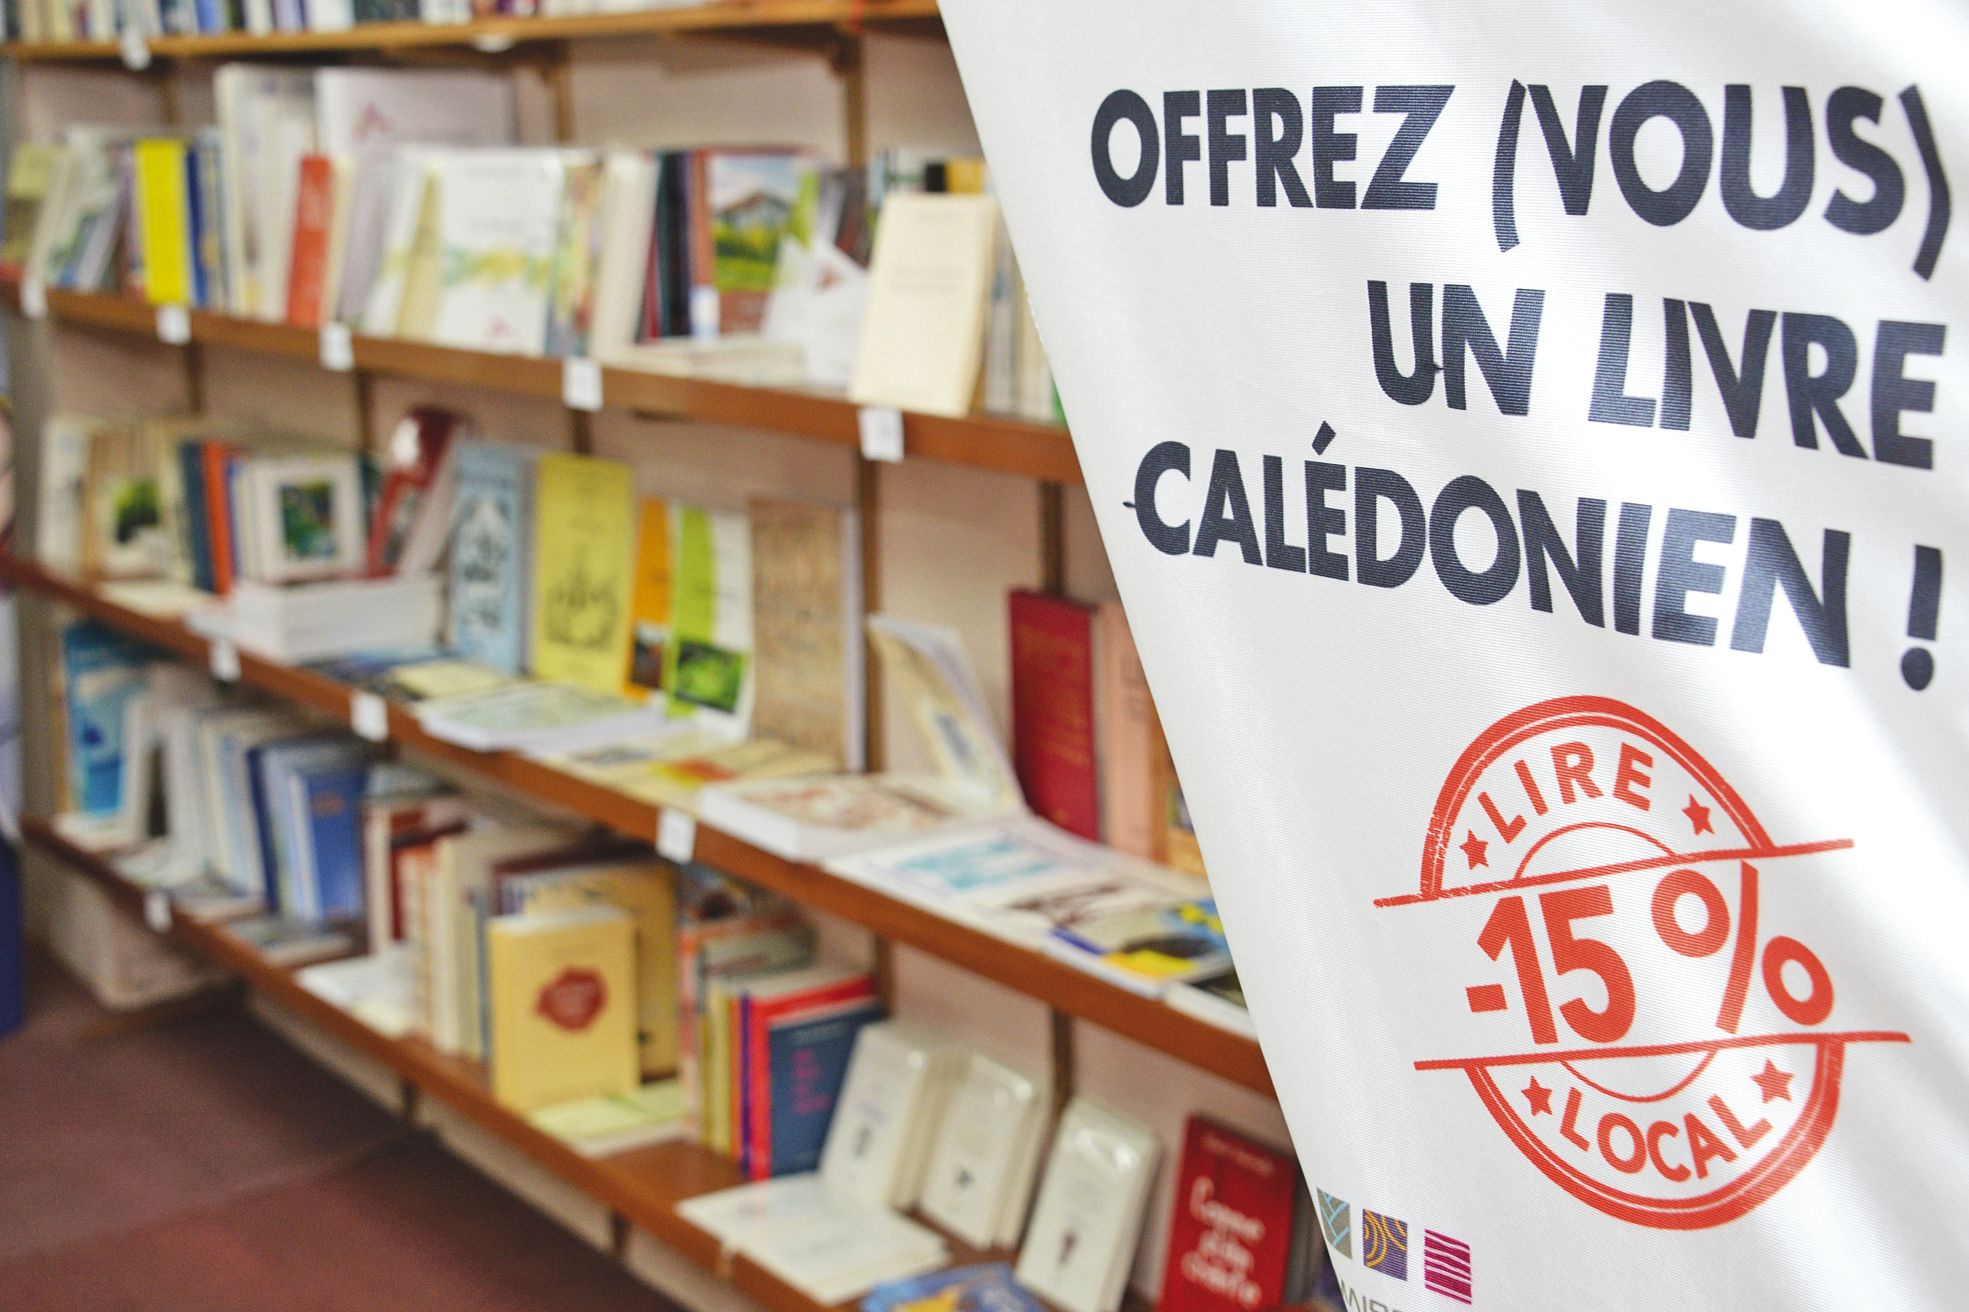 Depuis le 14 novembre, la librairie Calédolivres relaie l’opération. Sur certains ouvrages,  la remise de 15 % se traduit par une économie de 500 francs, par exemple.